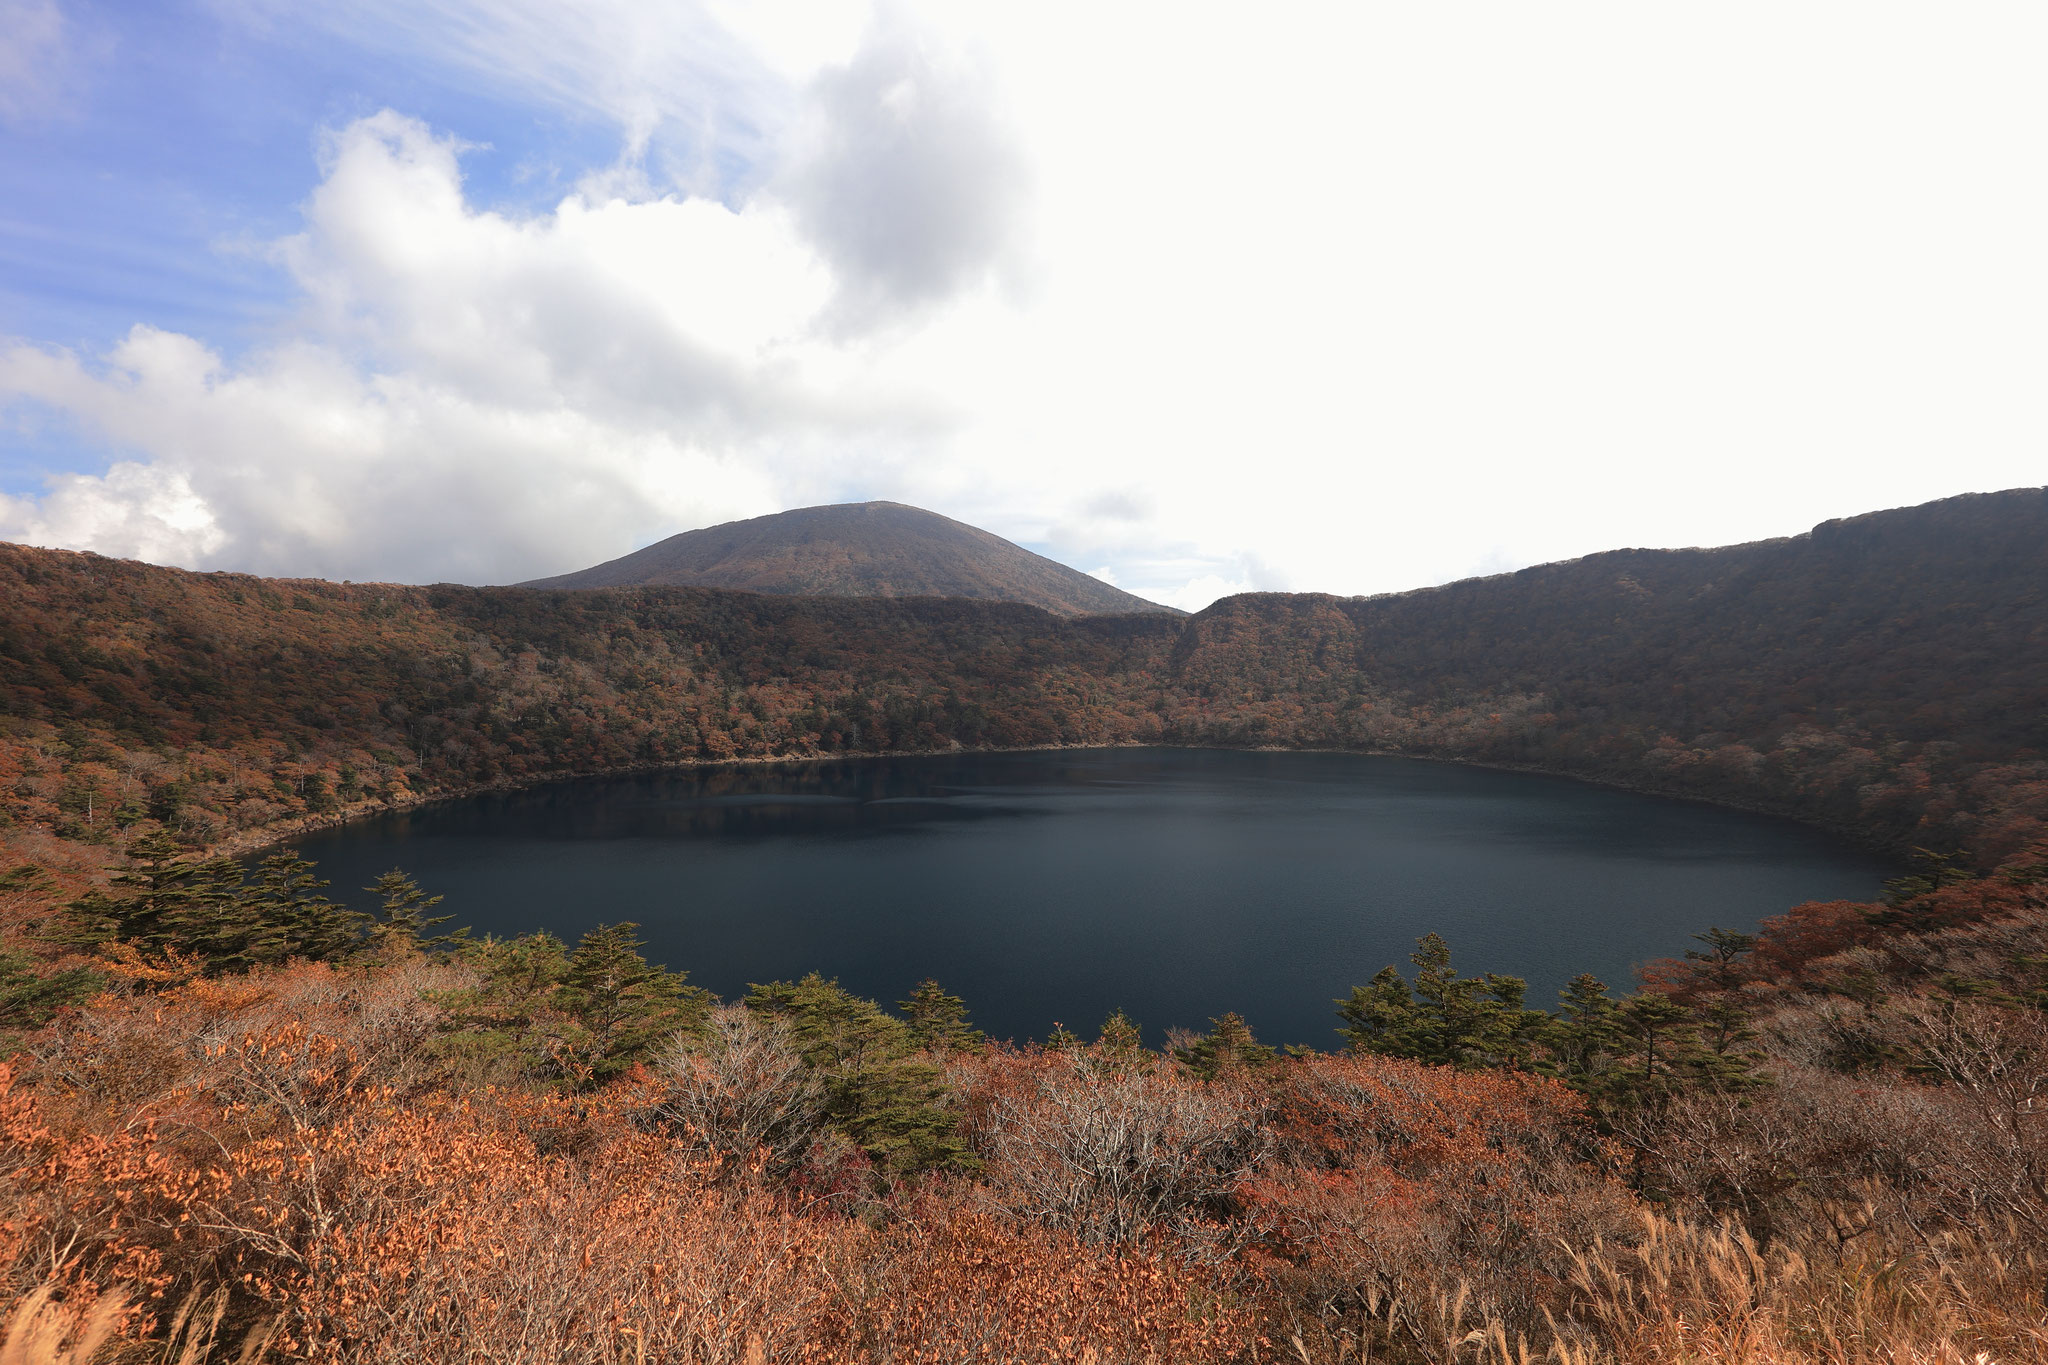 雲晴れて韓国岳と大浪池の秋景色を堪能(11月4日 霧島市)